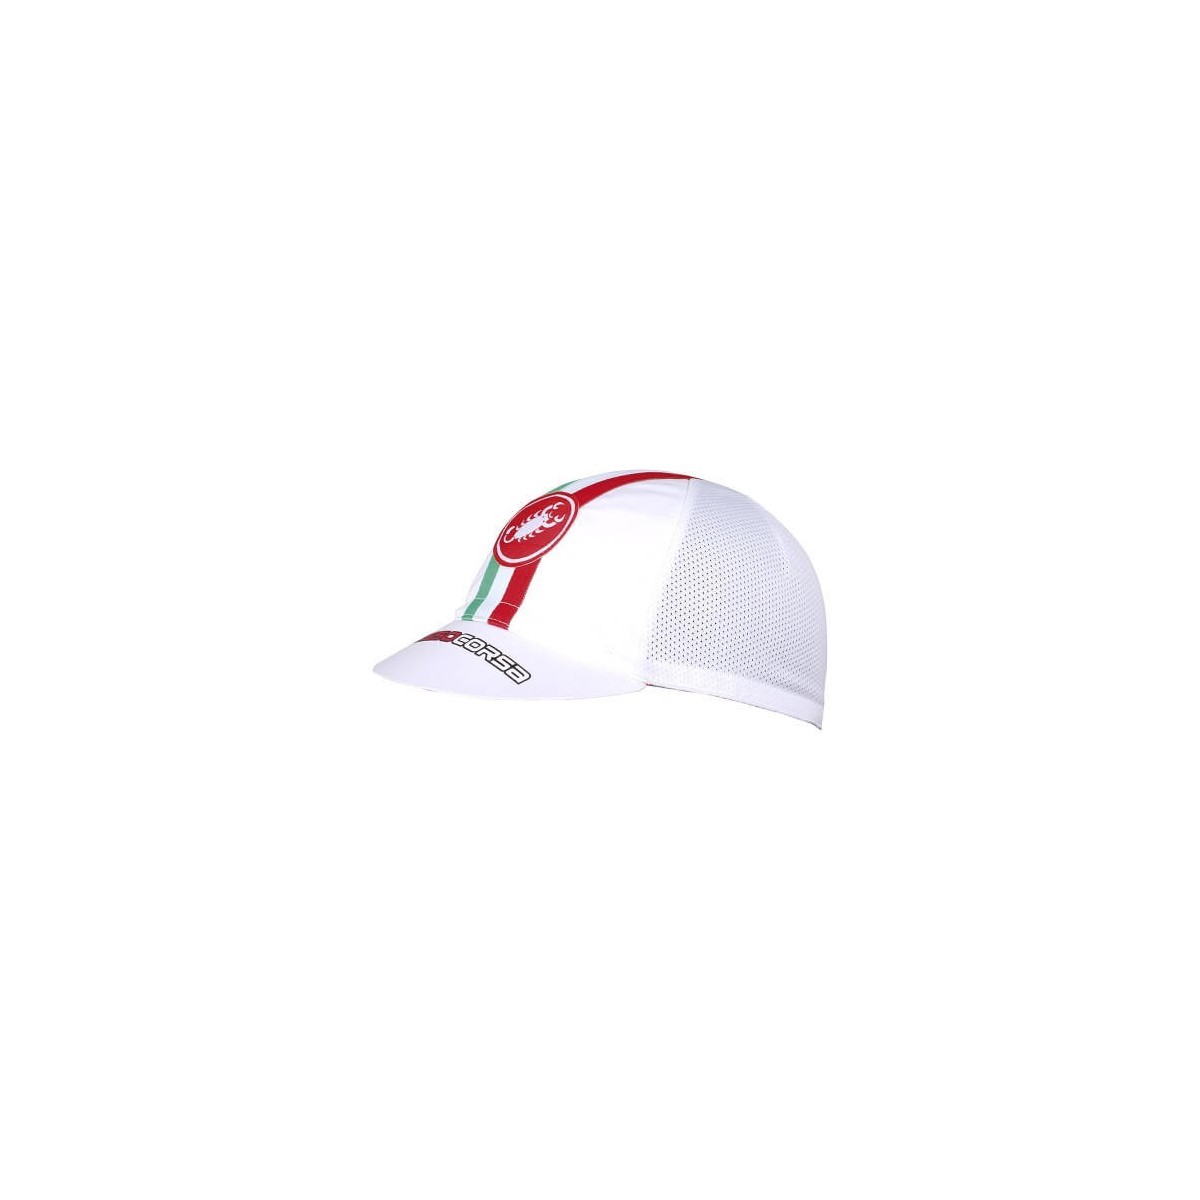 FOR MAN günstig Kaufen-Castelli Performance White Cap. Castelli Performance White Cap <![CDATA[Es besteht aus einem hoch atmungsaktiven Material und eignet sich perfekt für einen lässigen Stil oder zum Tragen im Radsporttraining unter dem Helm.]]>. 